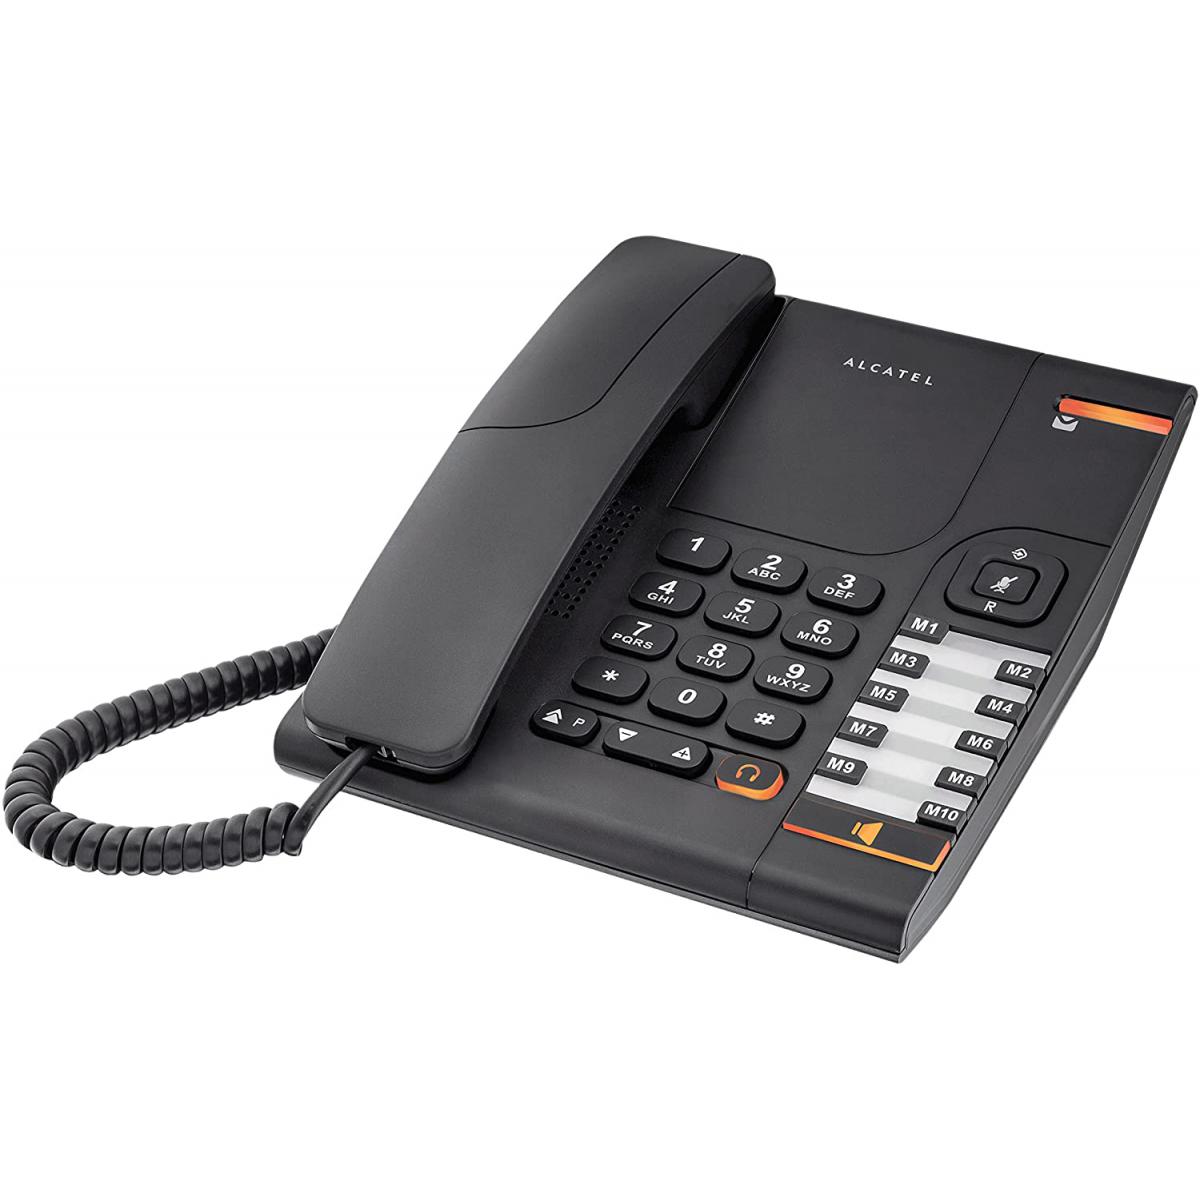 Alcatel - telephone filaire analogique VoIP Noir - Téléphone fixe filaire